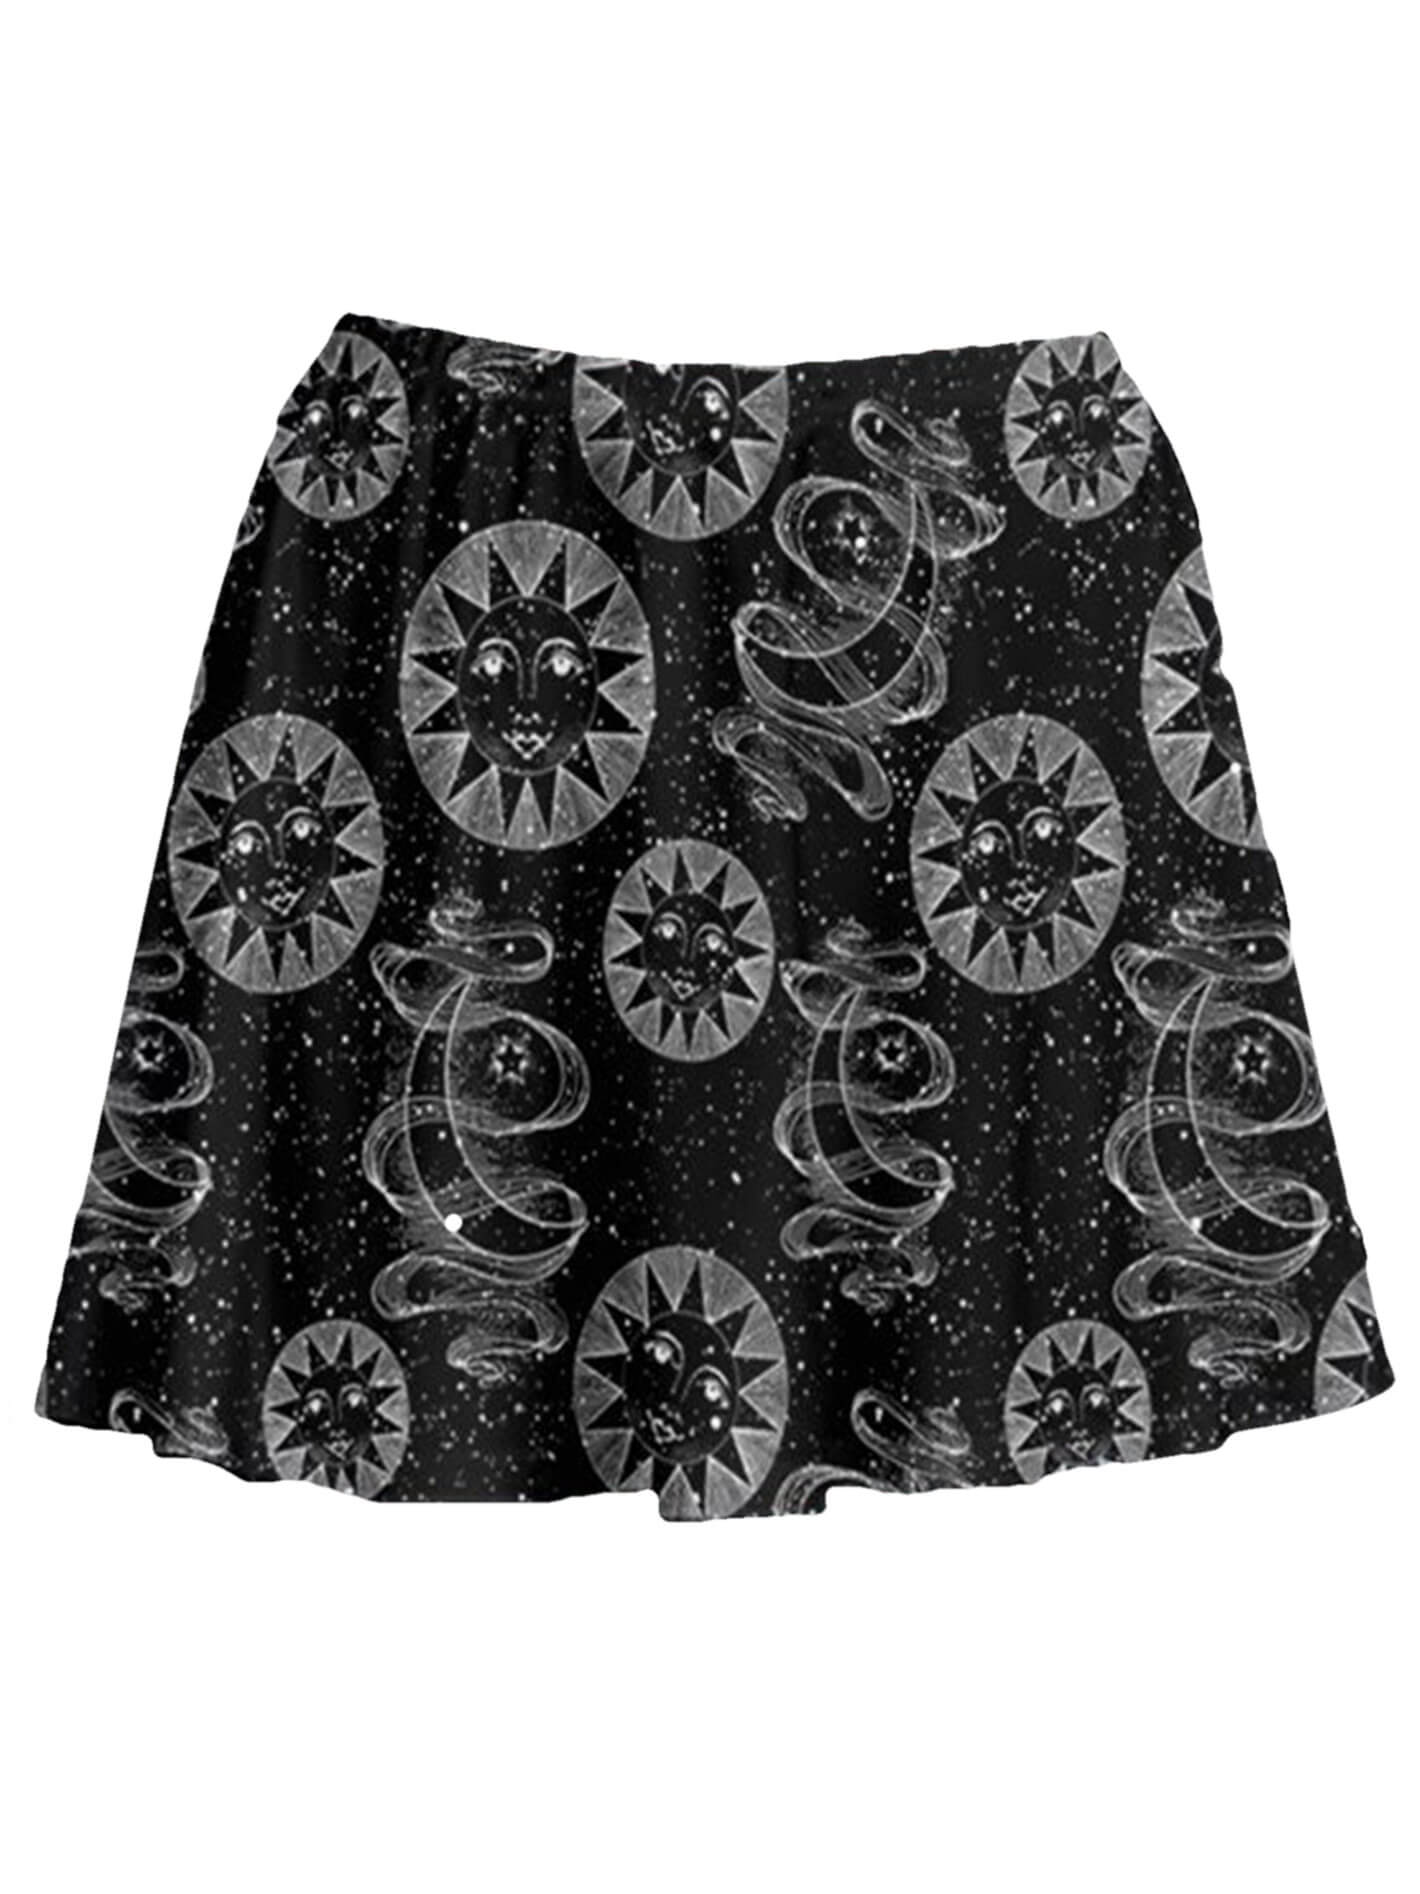 Celestial sun and moon print skirt.